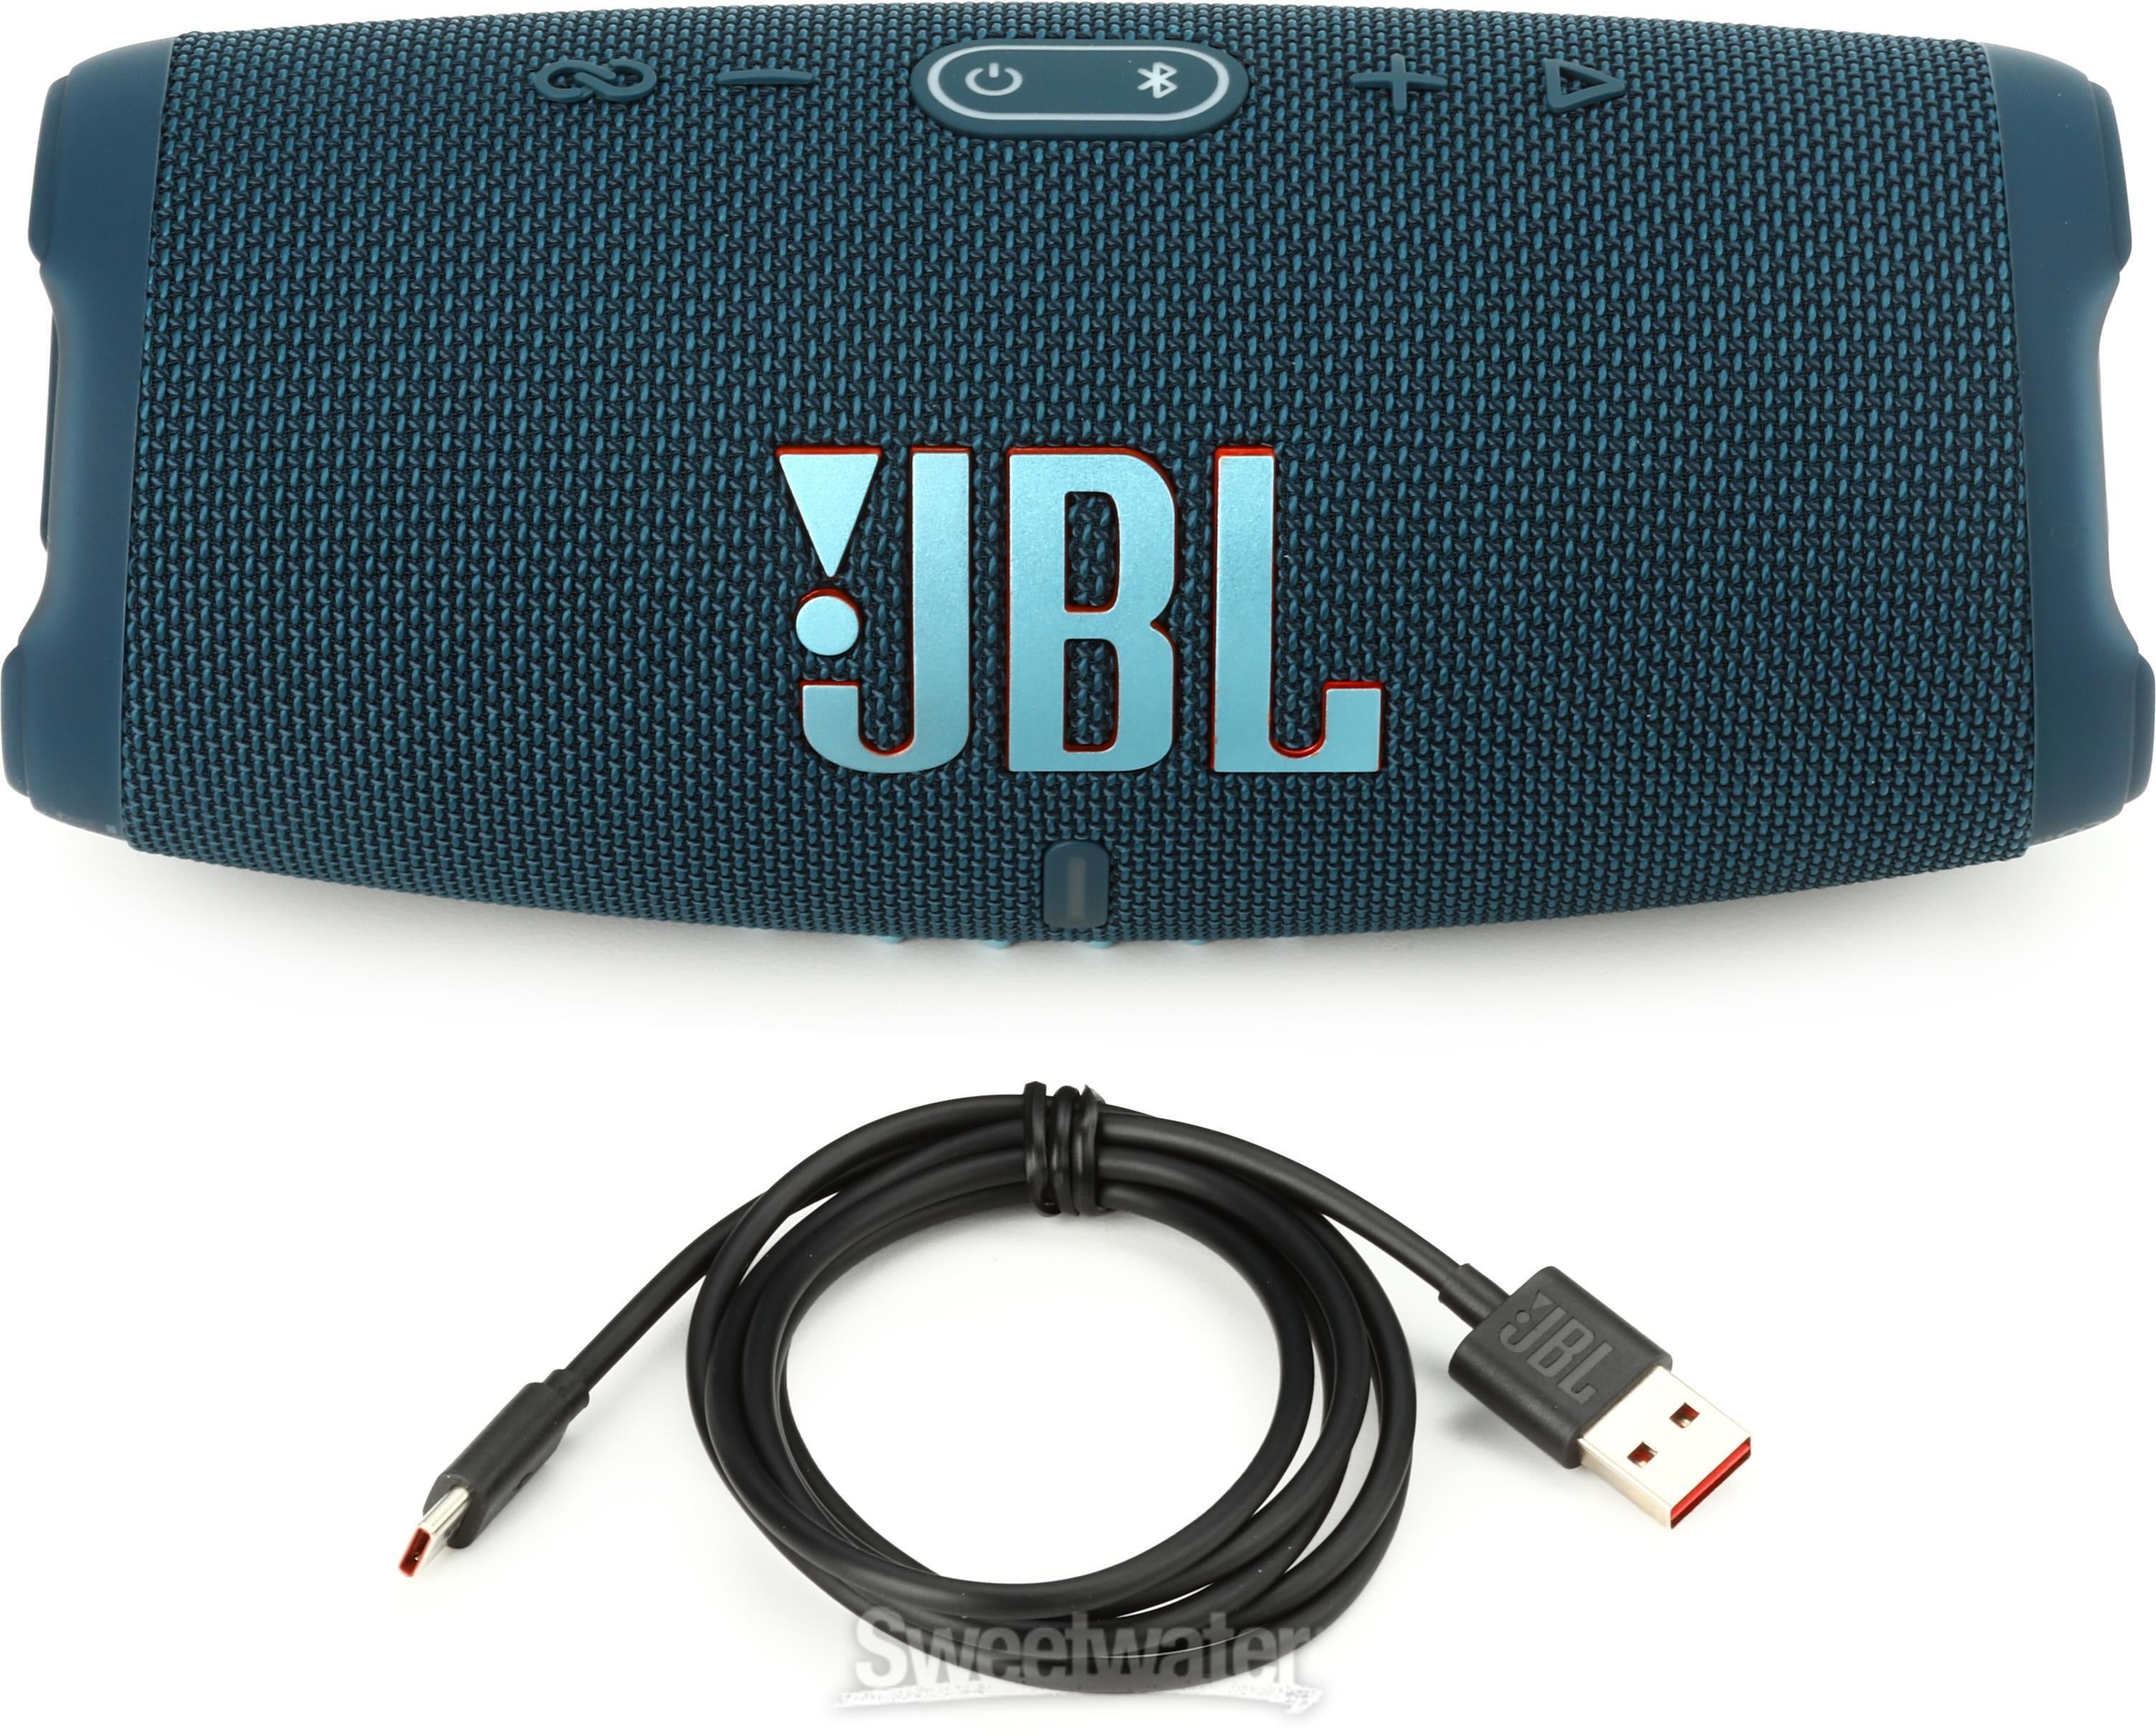 JBL チャージ5 charge5 Blue-